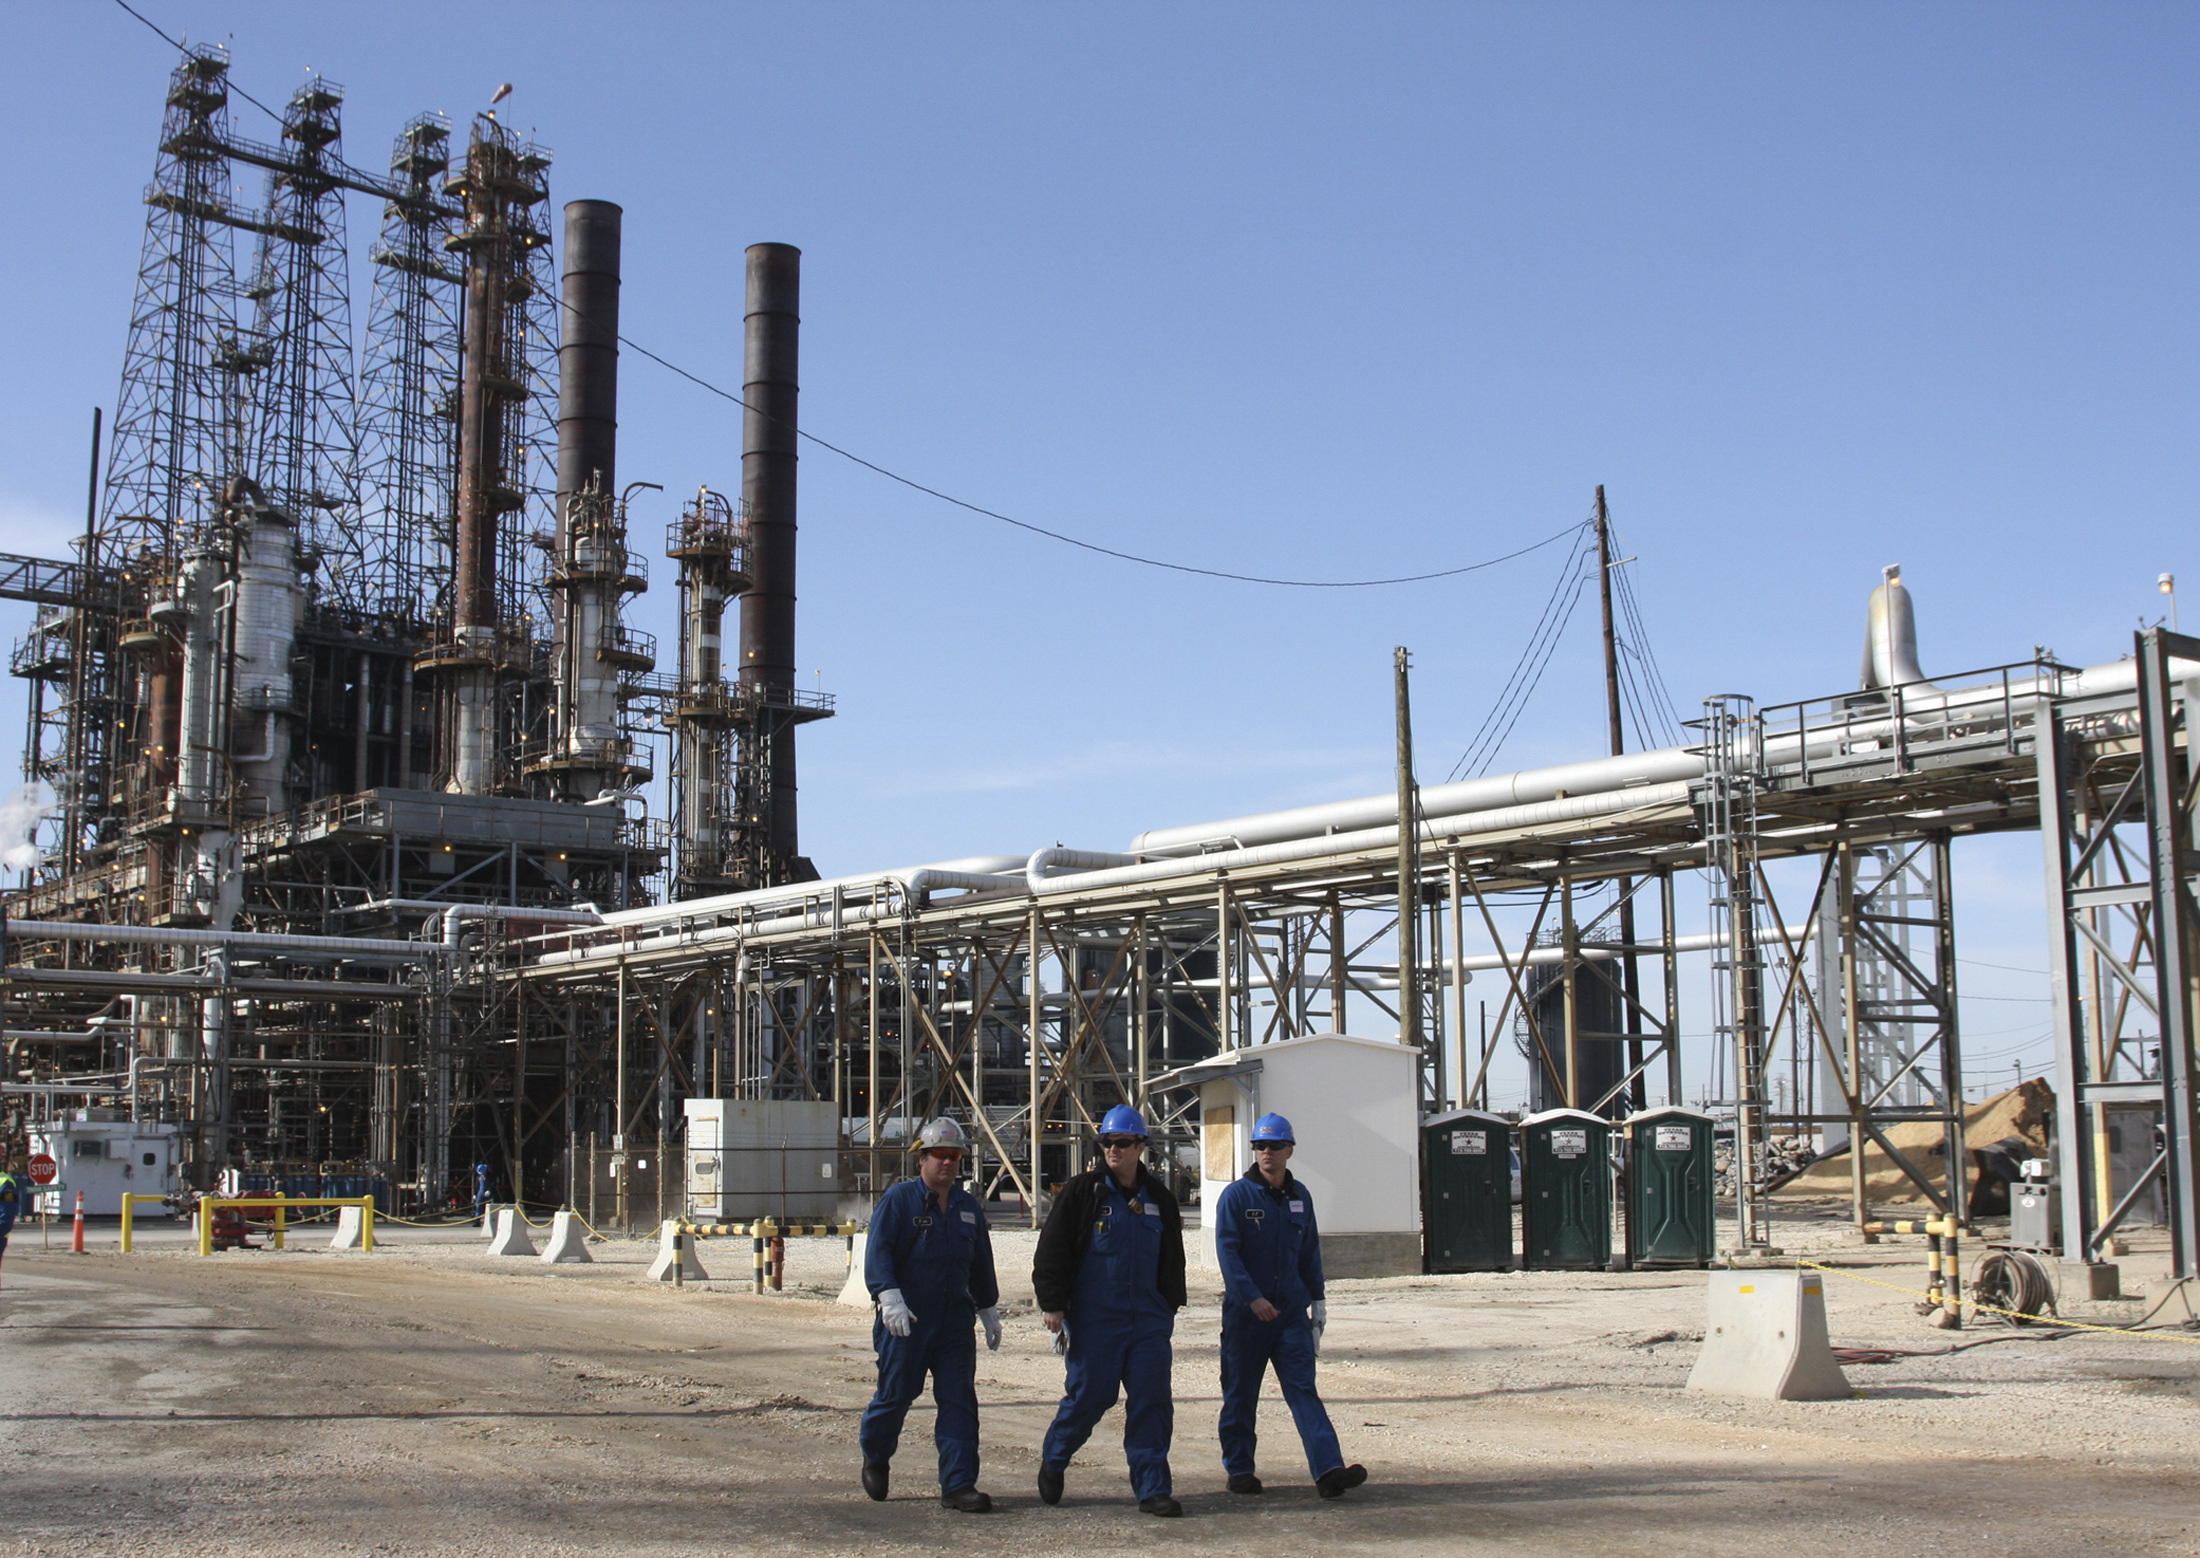 Refinery workers walk inside the LyondellBasell oil refinery in Houston